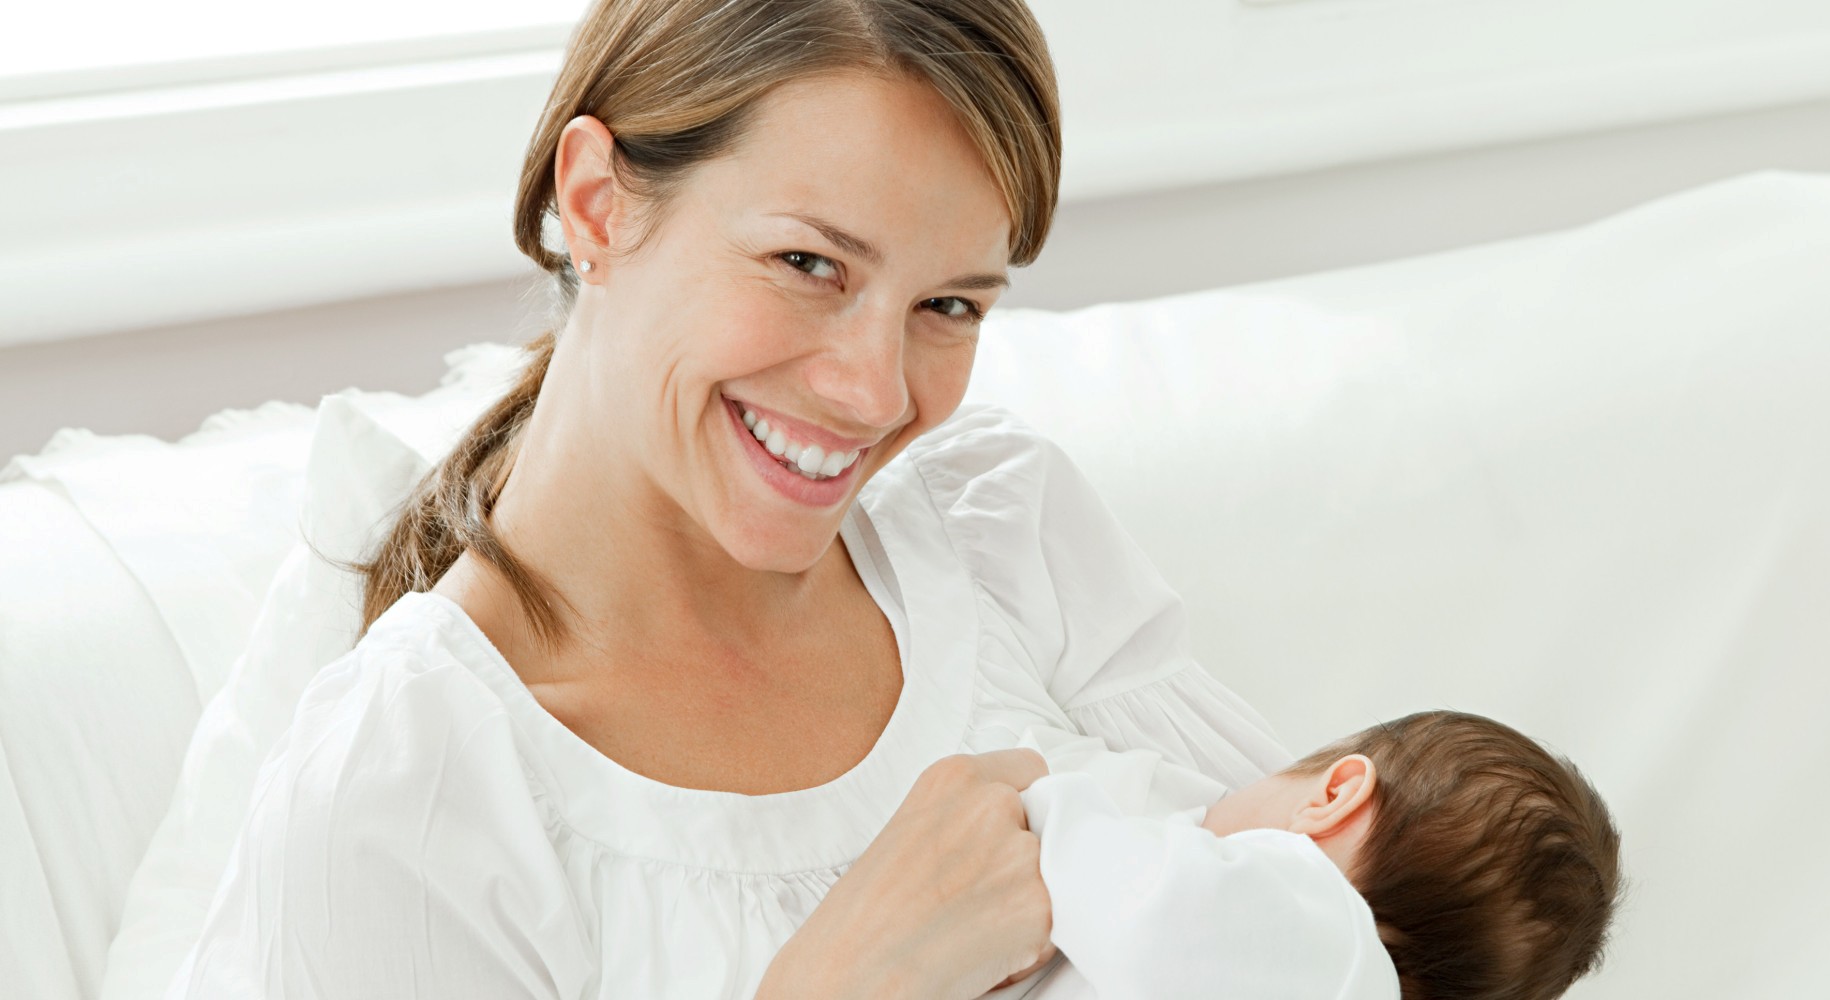 مزایای شیر مادر